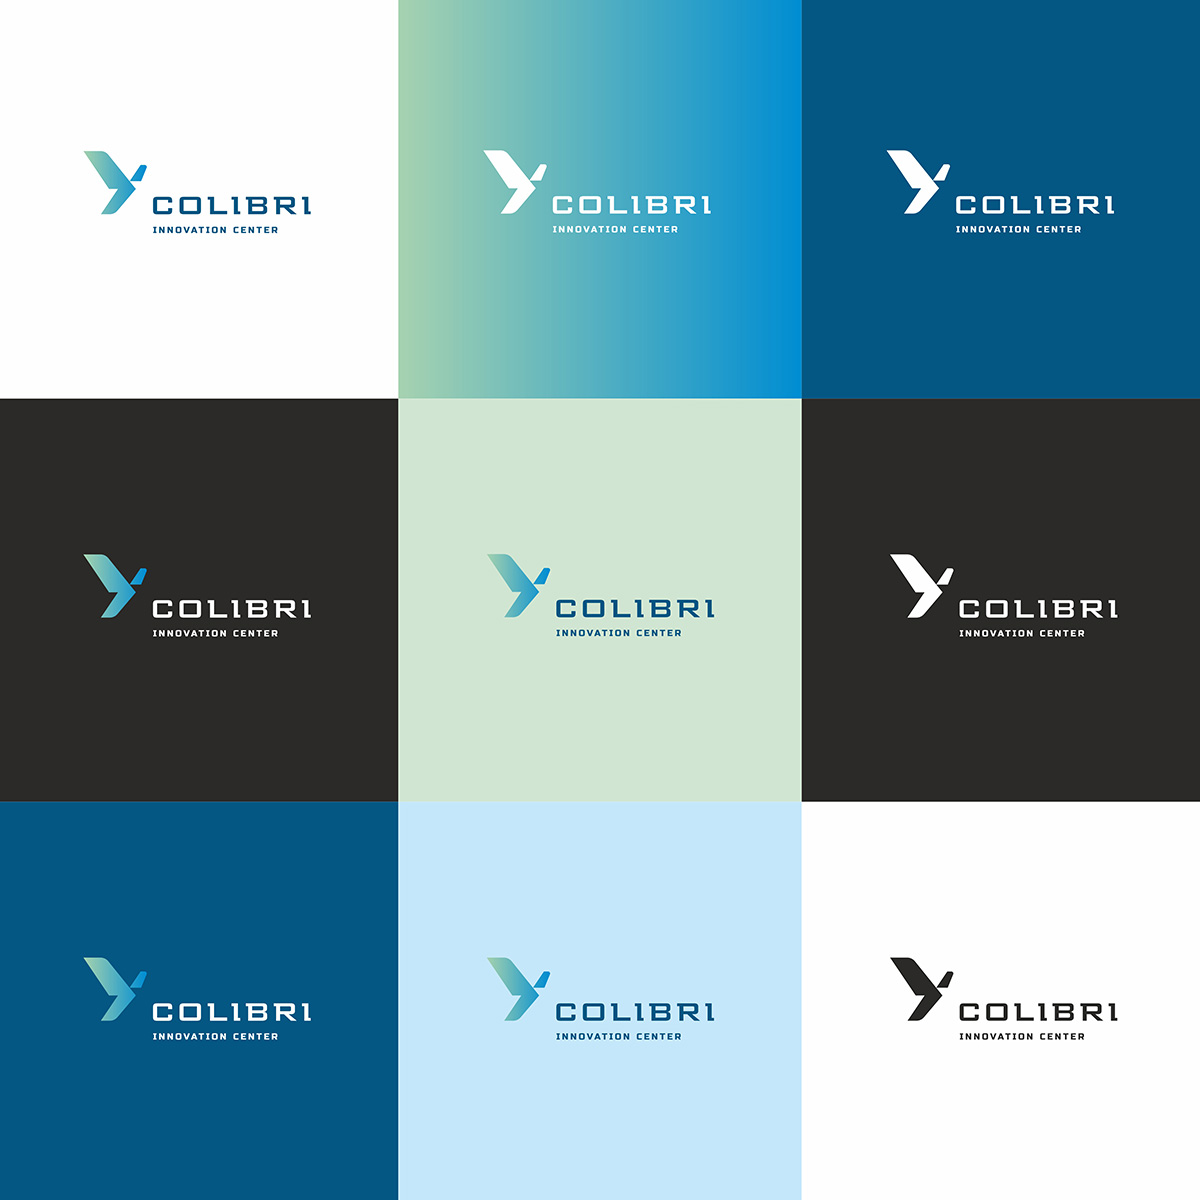 colibri_logo